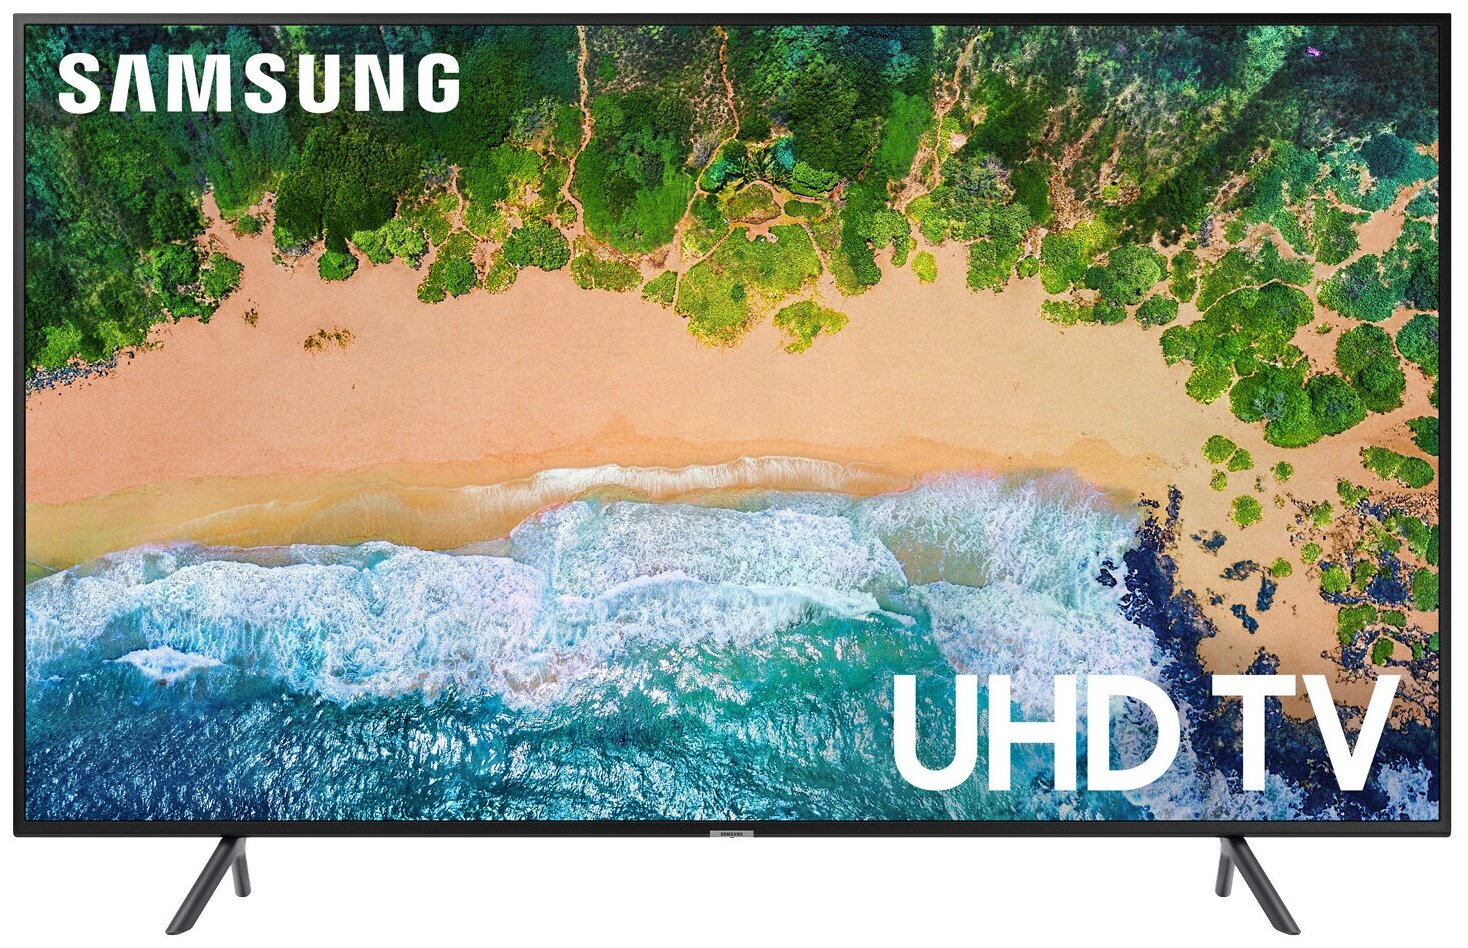 40" Телевизор Samsung UE40NU7100U 2018 HDR, LED, черный уголь